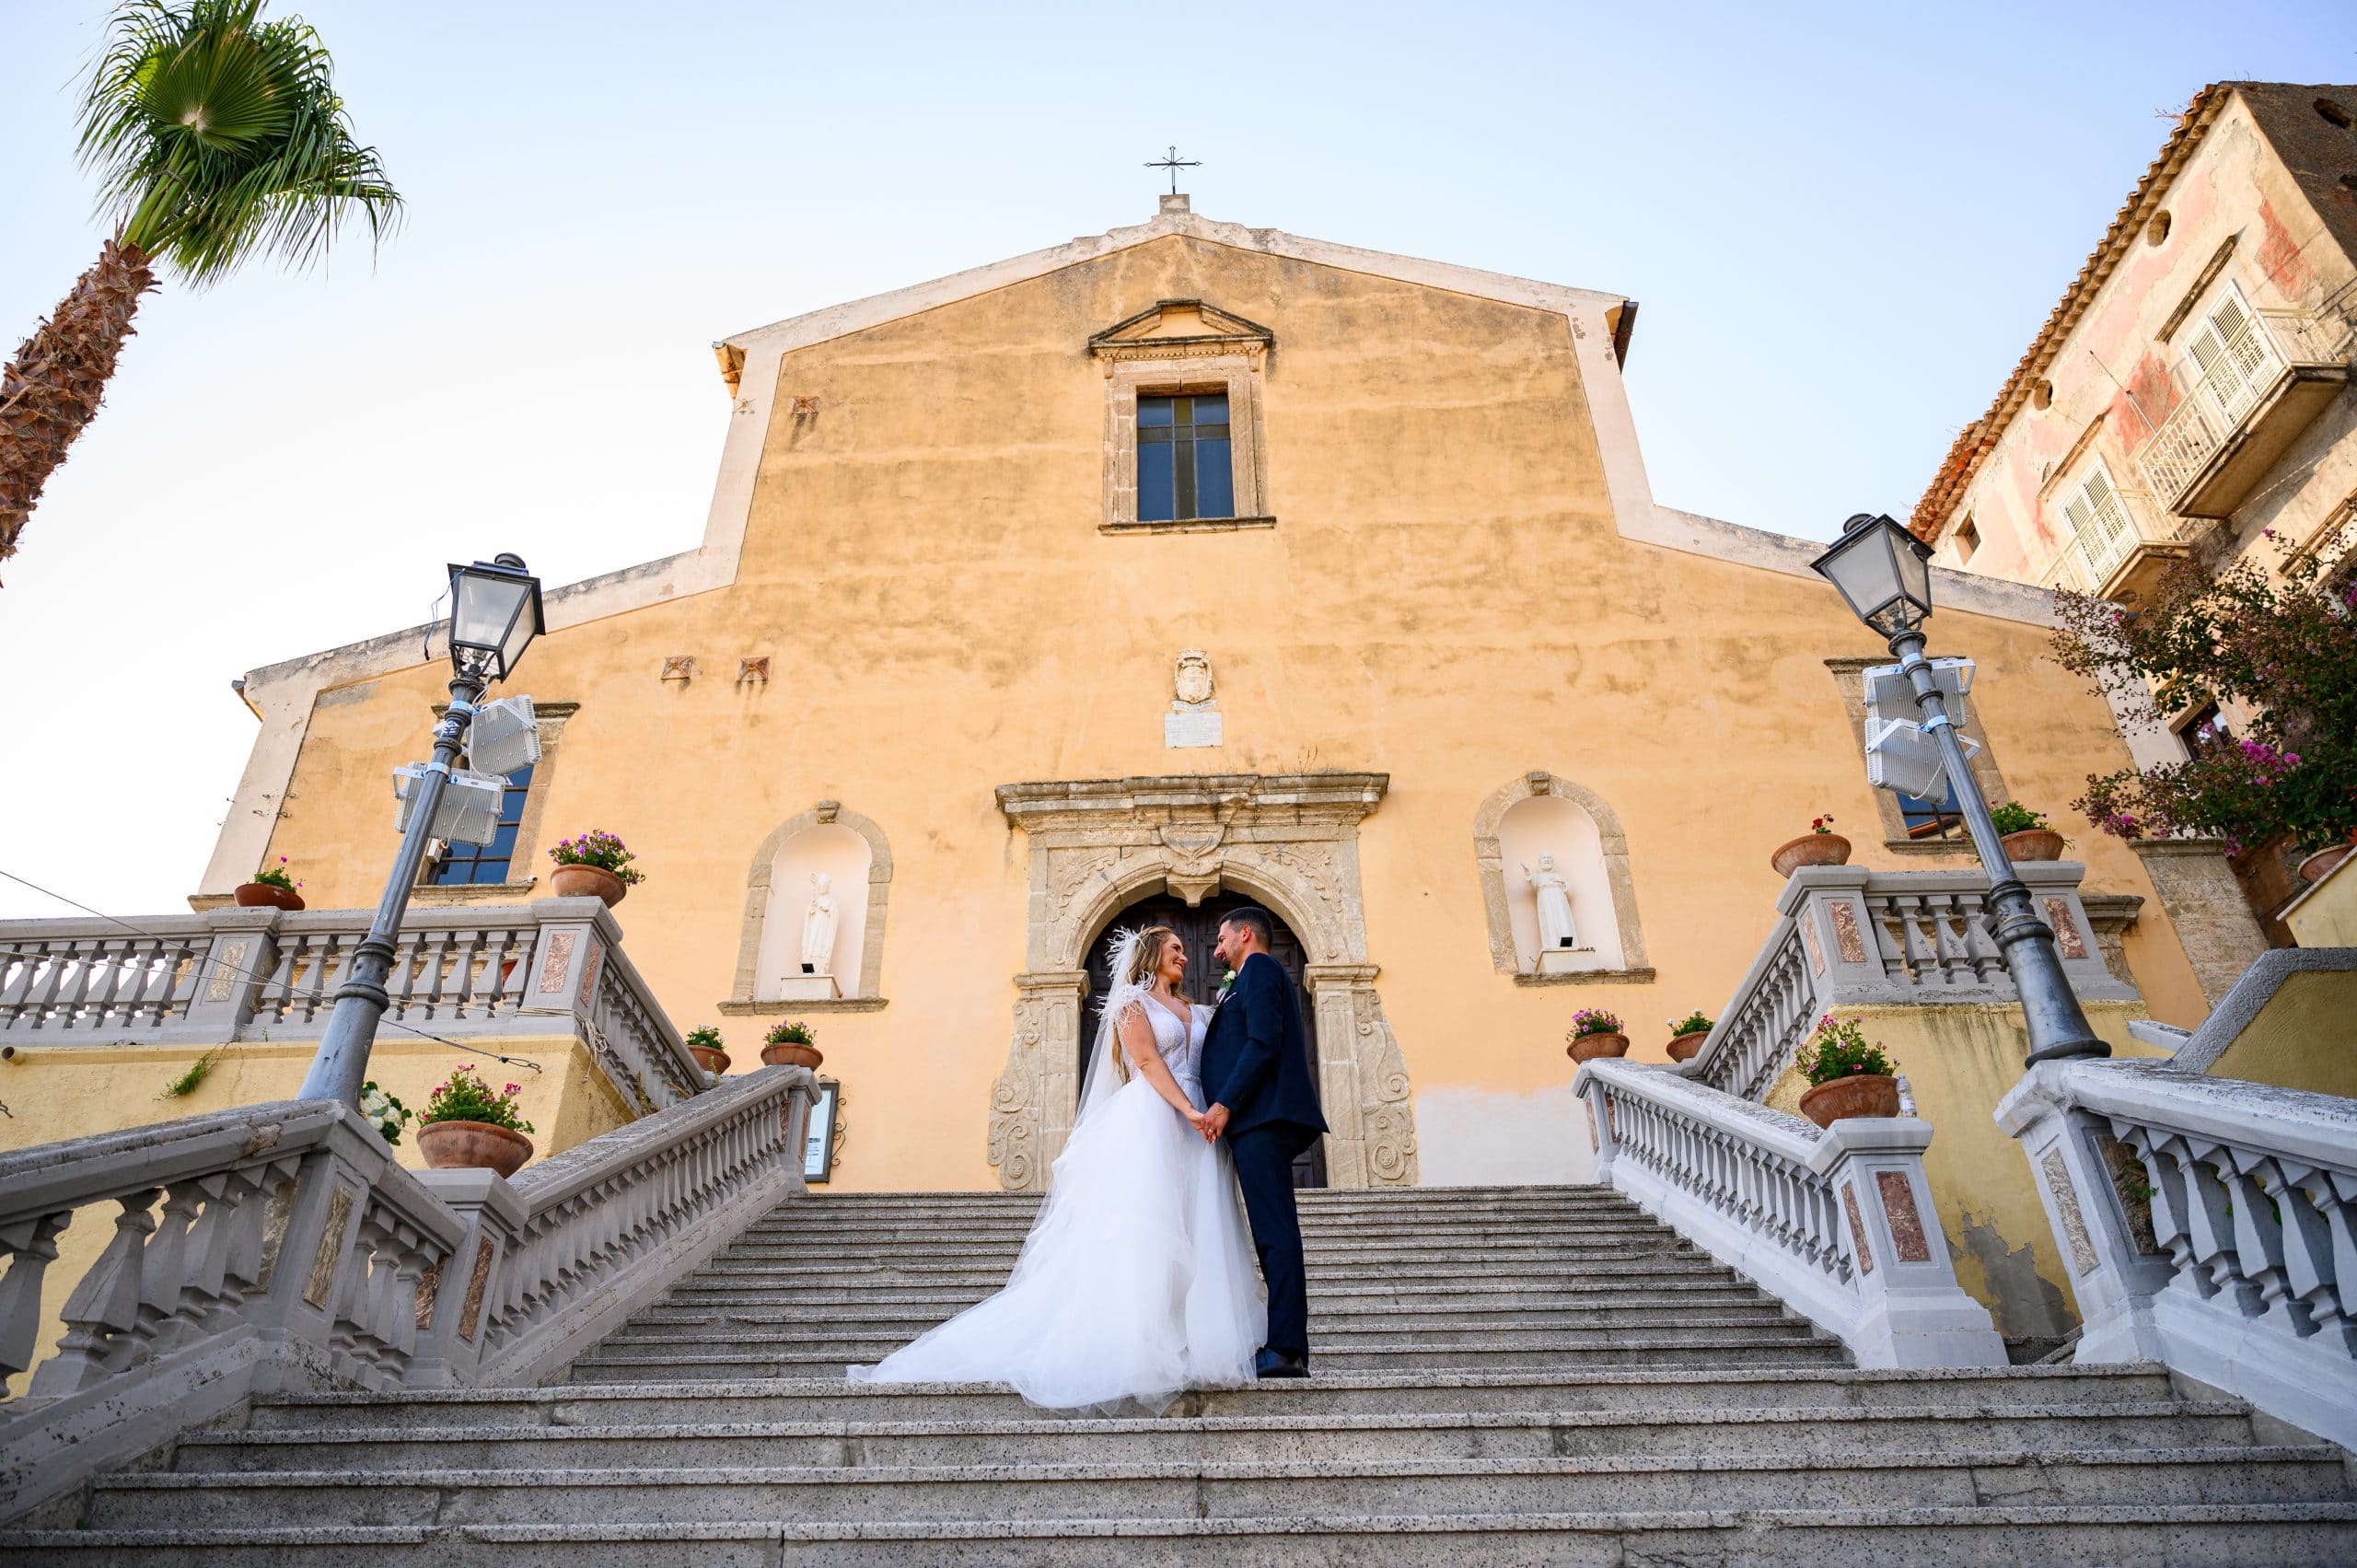 Vilma Wedding & Event Planner _ bažnytinė santuoka Italijoje 2022 2023 _ vestuvių organizatorė planuotoja koordinatorė Vilma Rapšaitė _ vestuvės užsienyje _ Kalabrija